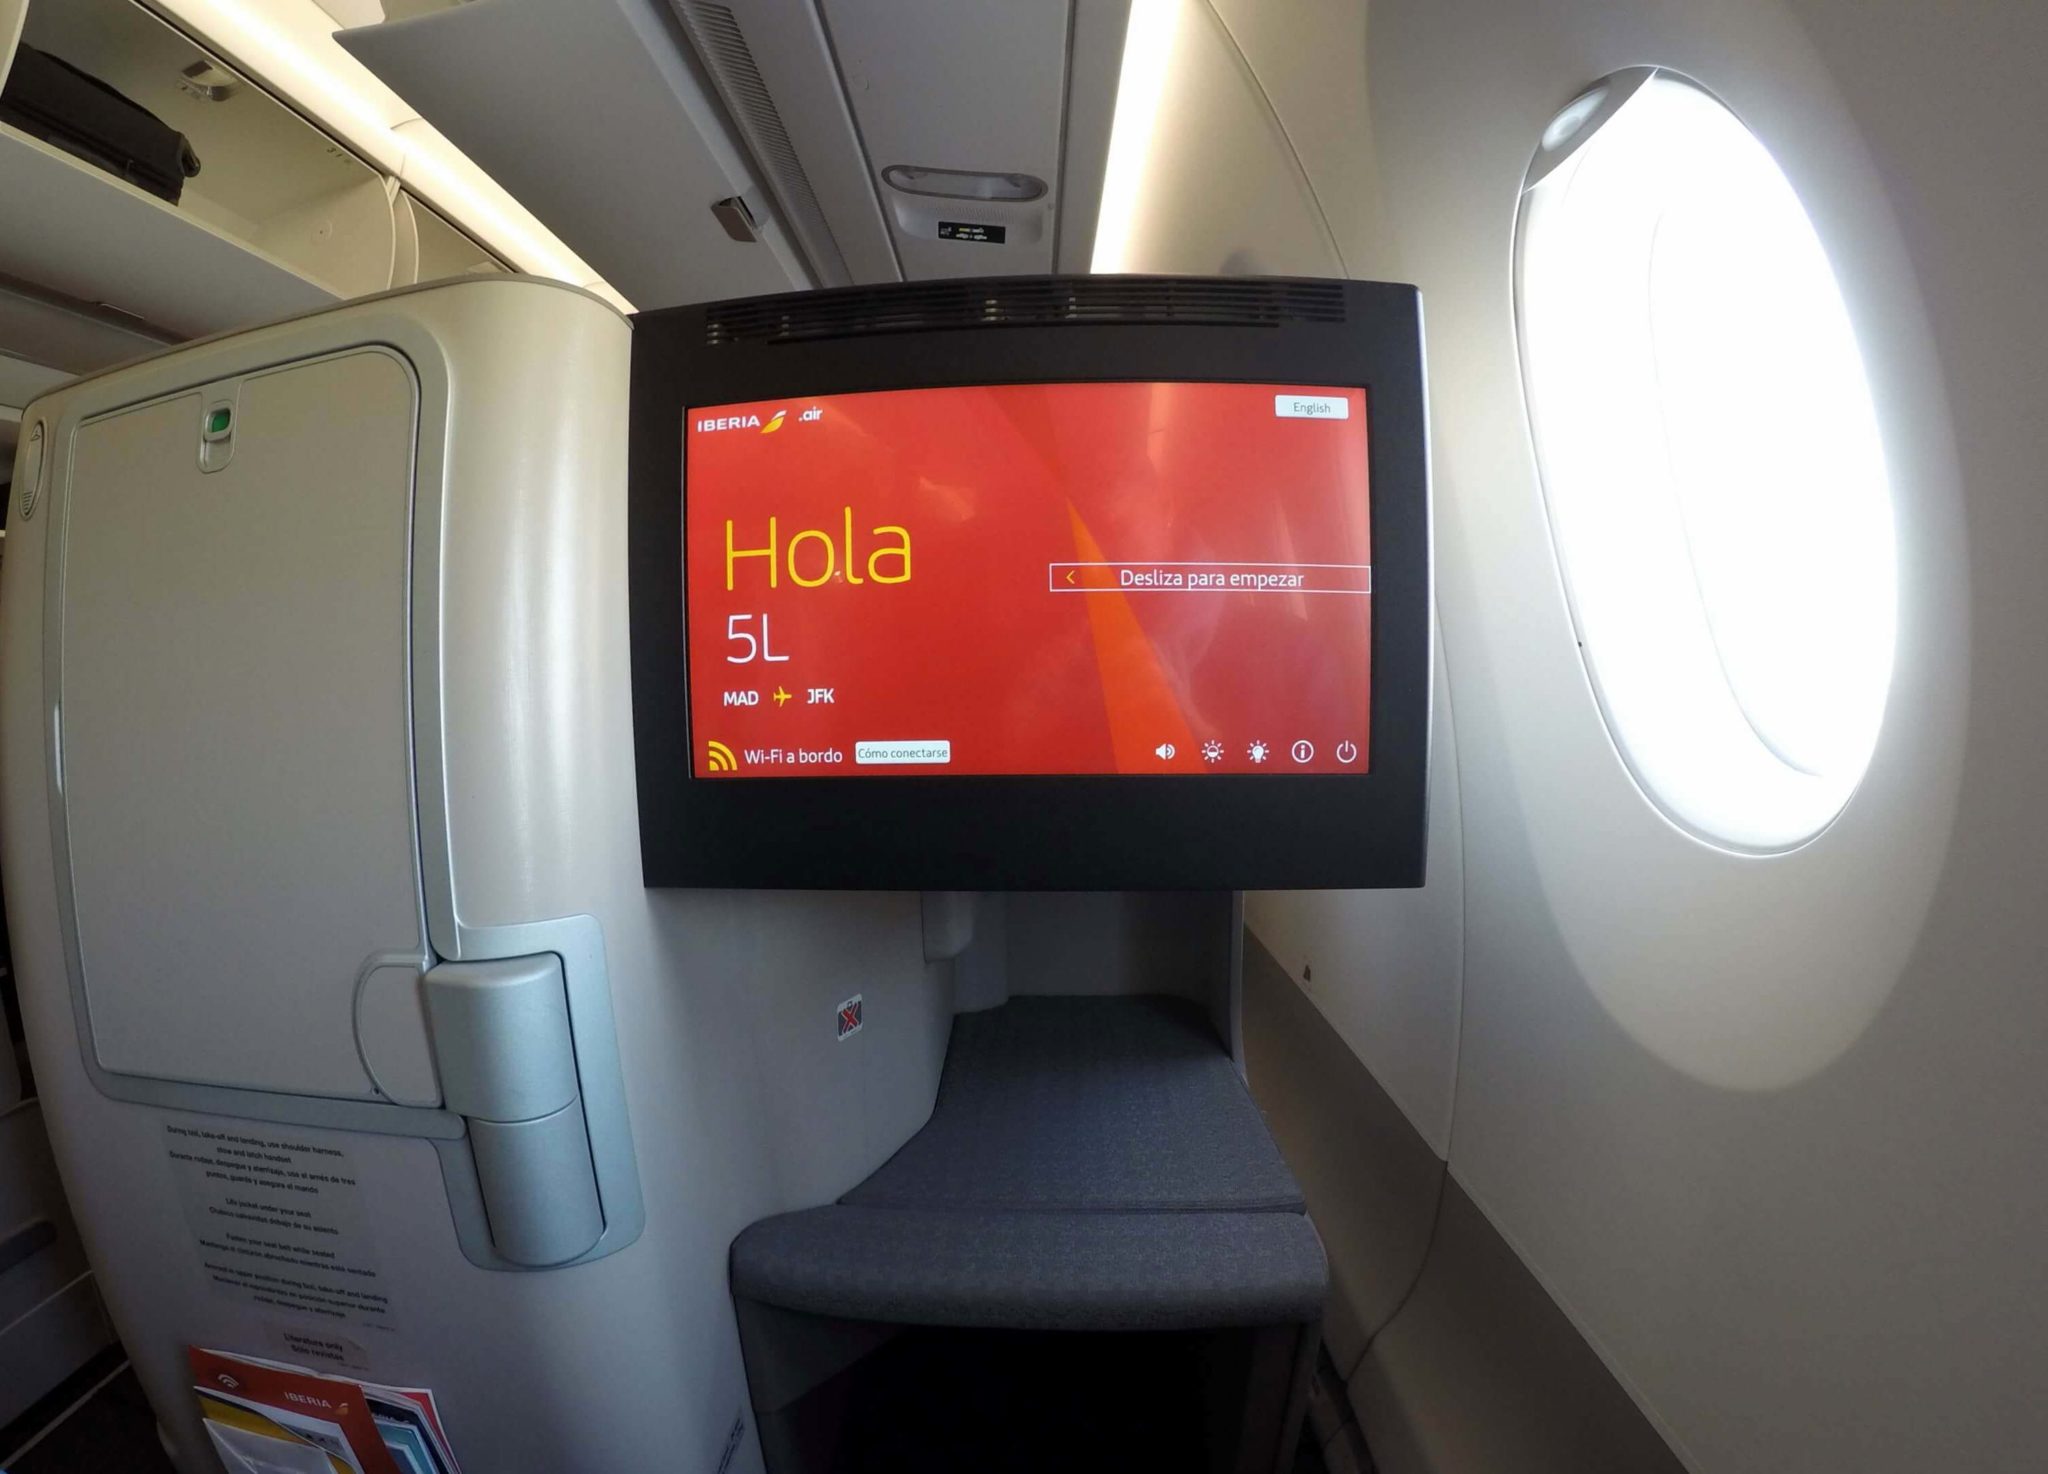 Monitor de TV business class Iberia A350